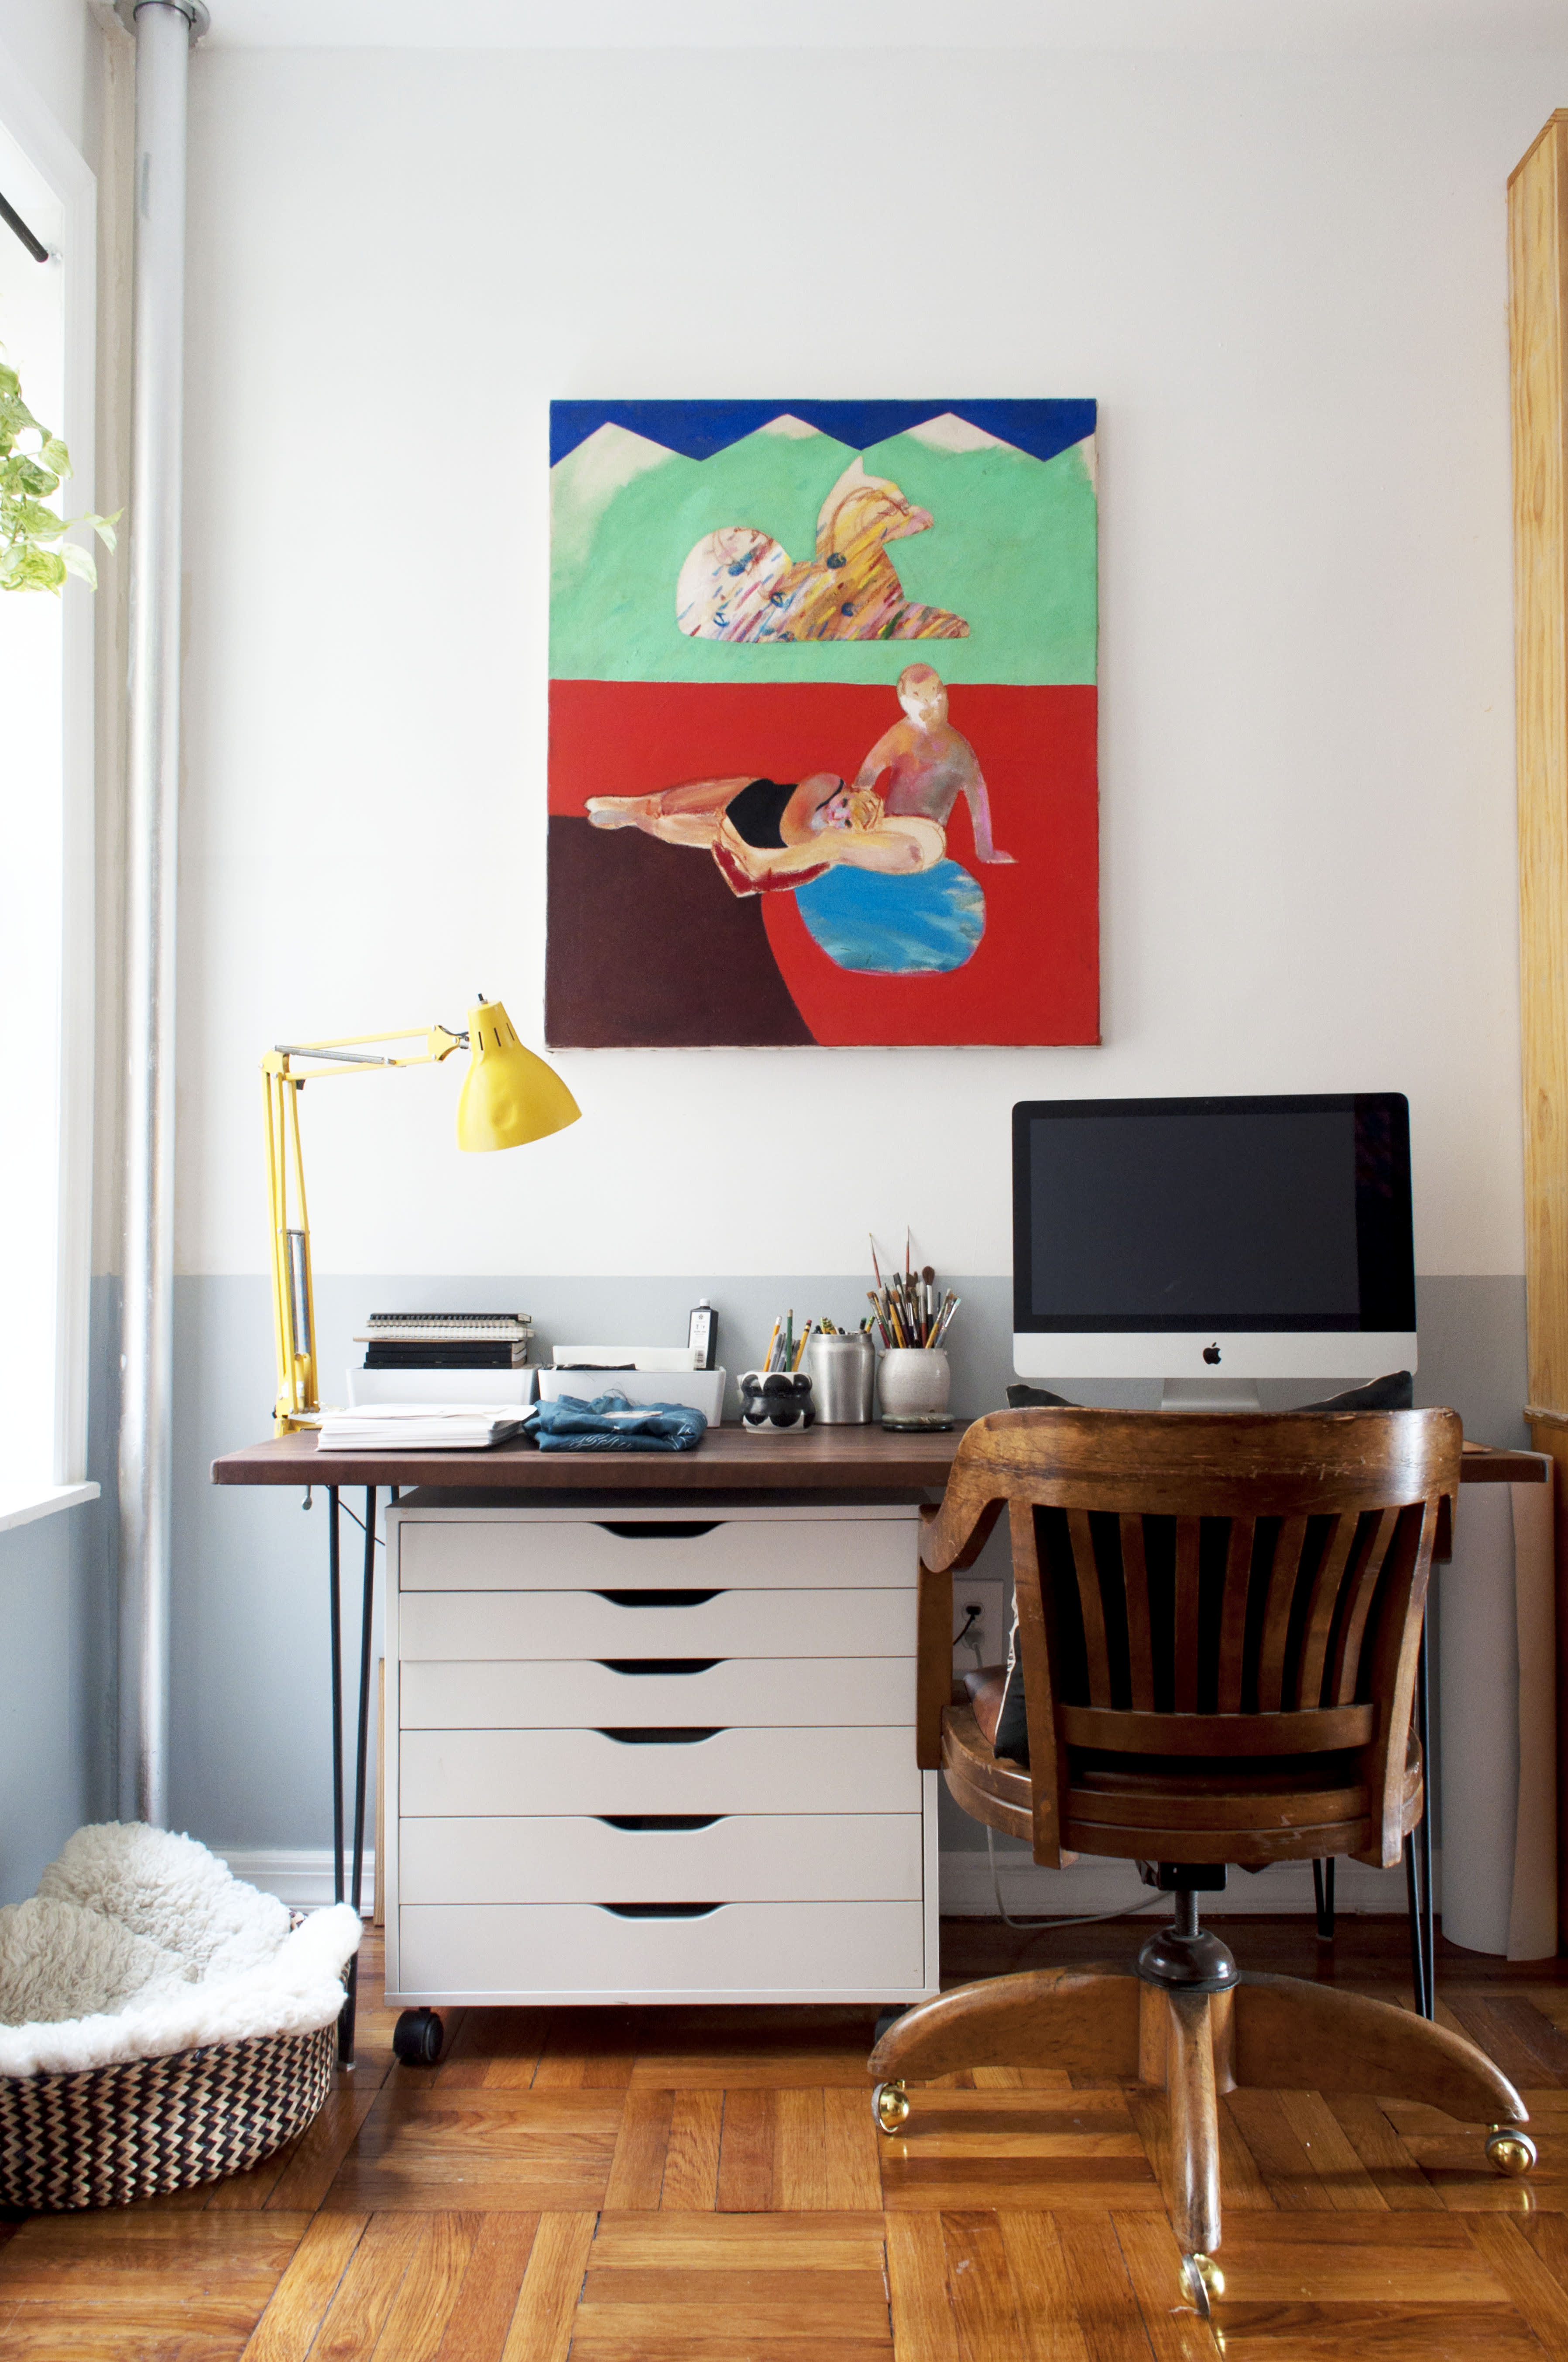 Furniture, Desks, Gift Ideas, Desktops, and Gadgets image inspiration on  Designspiration